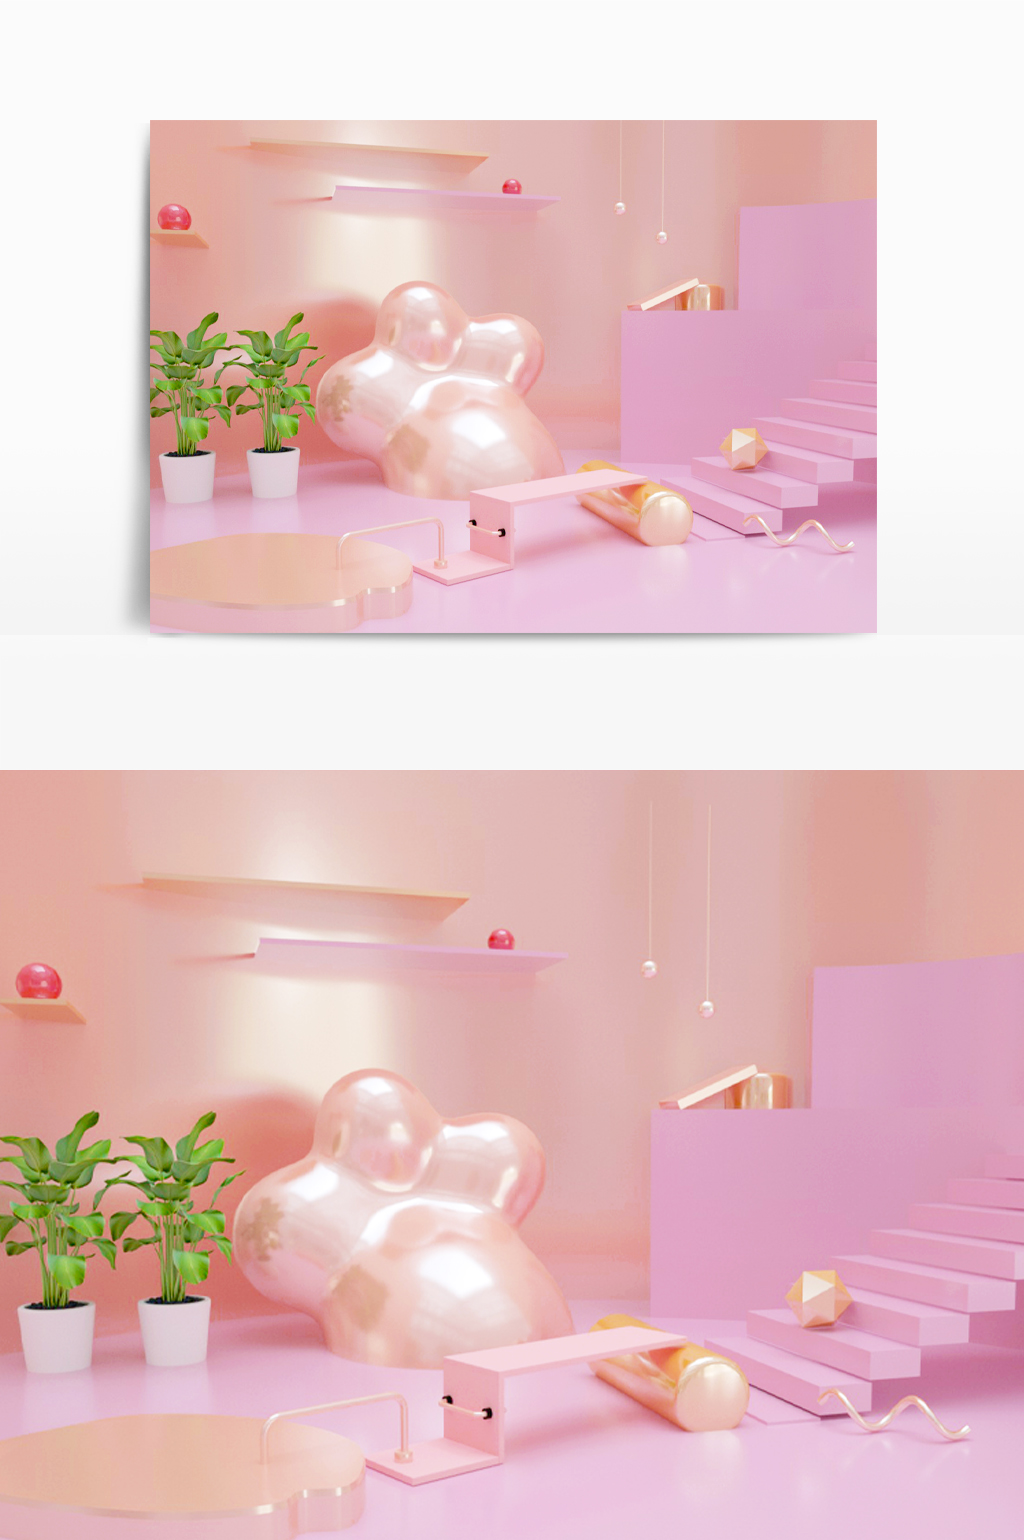 C4D模型创意粉色促销阶梯展台004.jpg